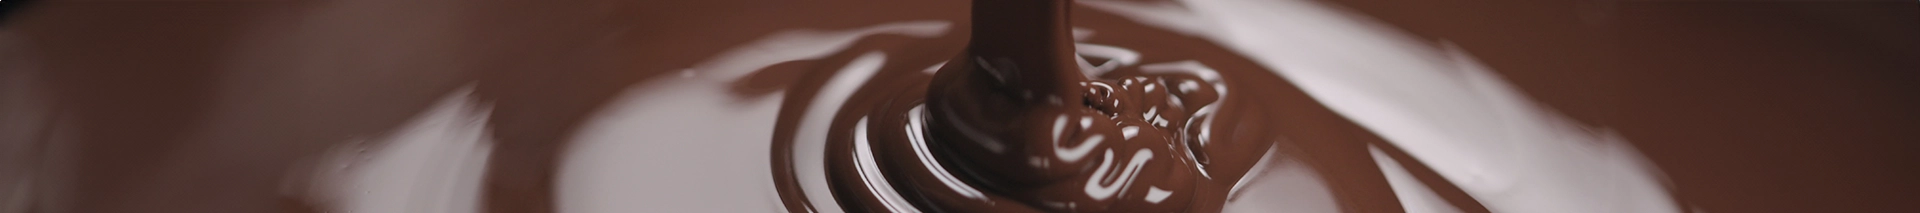 Banner para a categoria de chocolates com zoom em uma xícara de chocolate cremoso